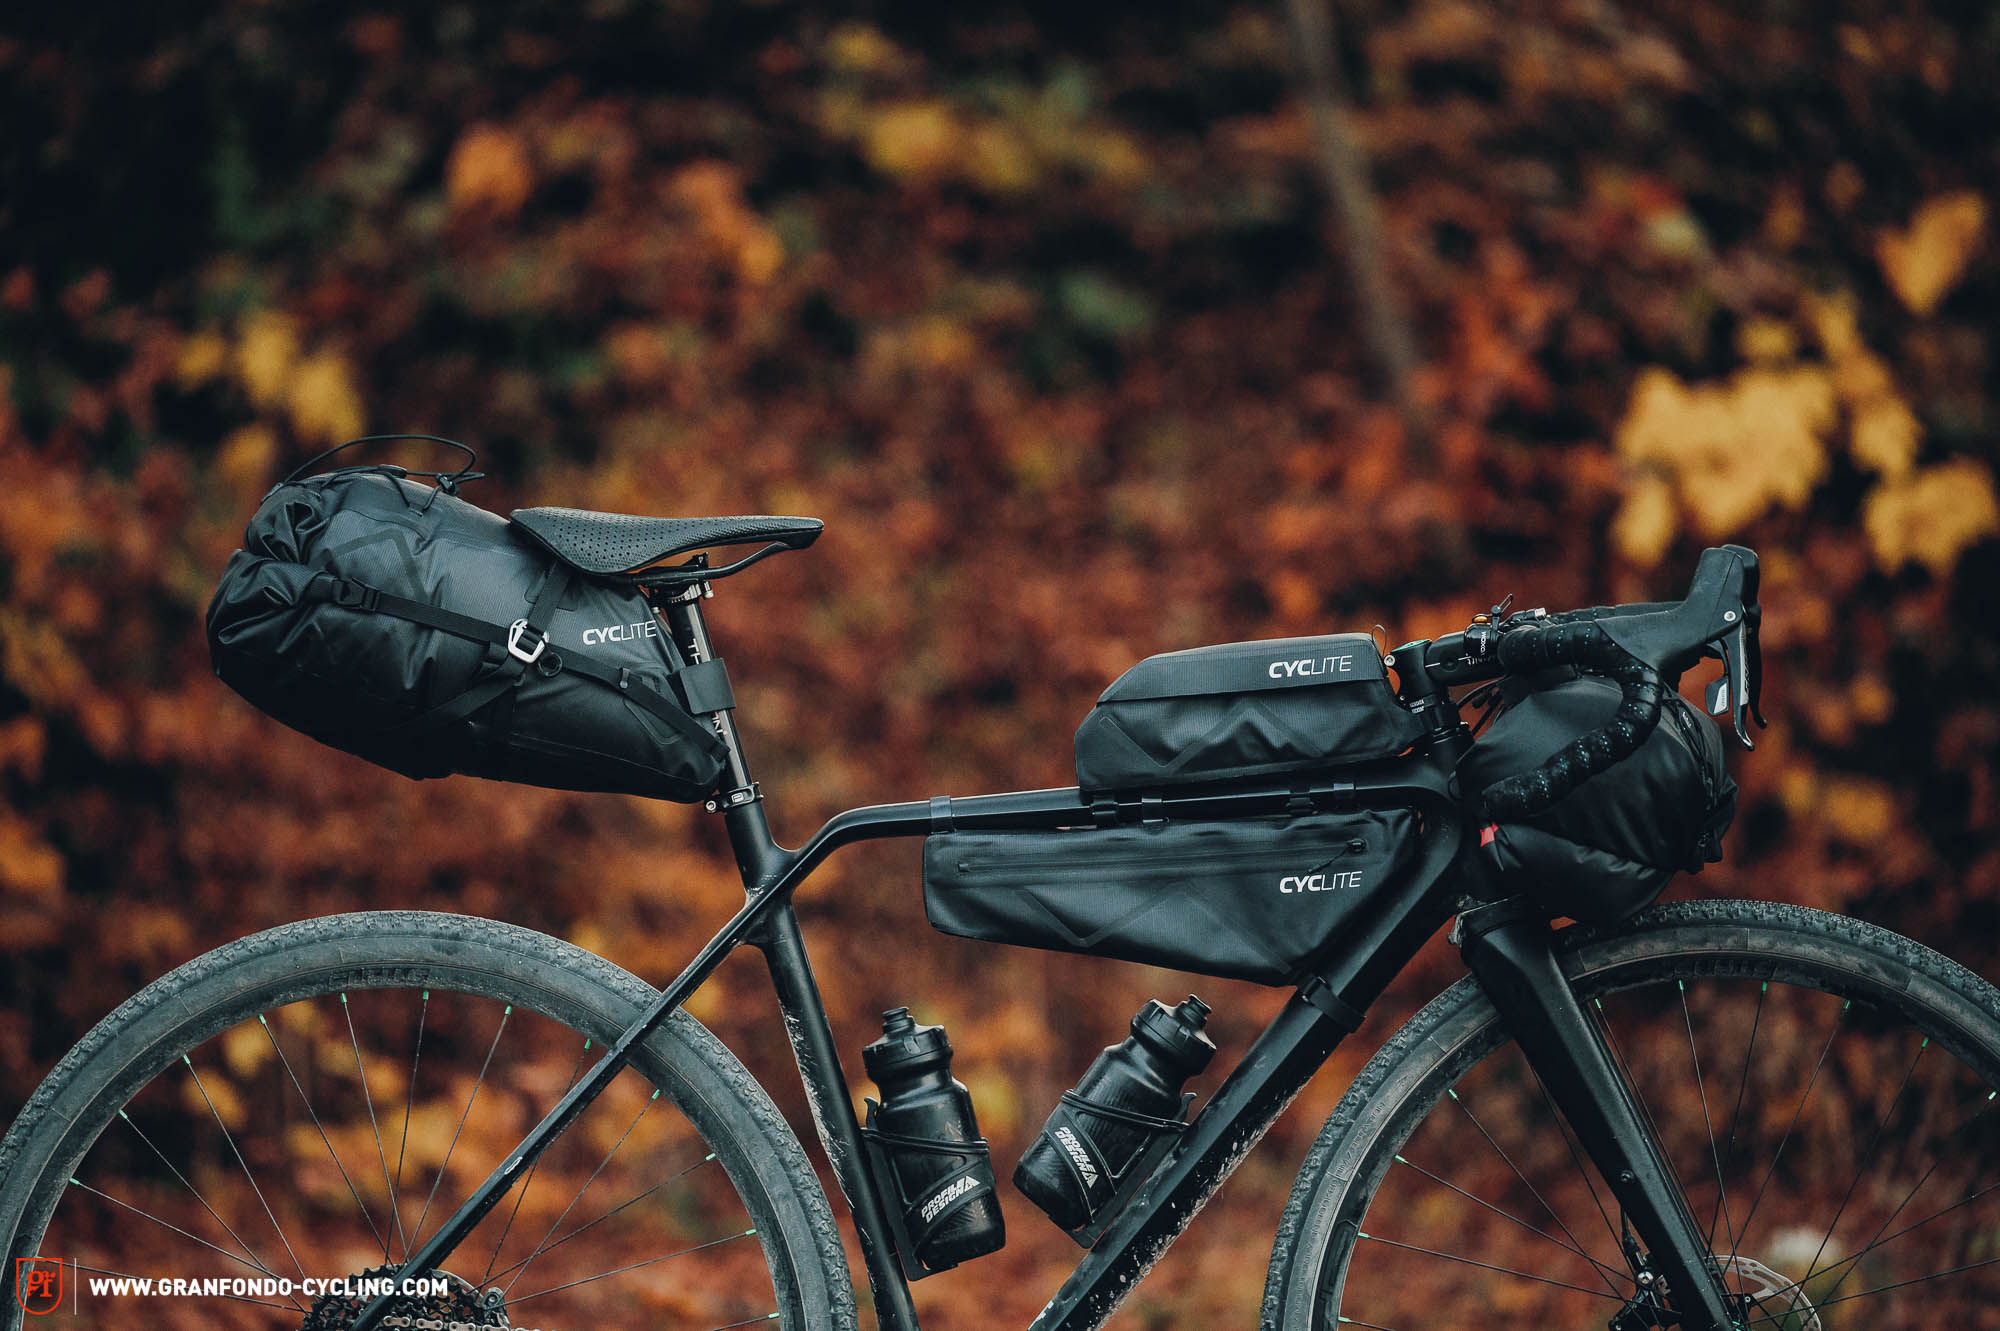 CYCLITE Bikepacking Bag System – Leichte Taschen für schnelle Bikes